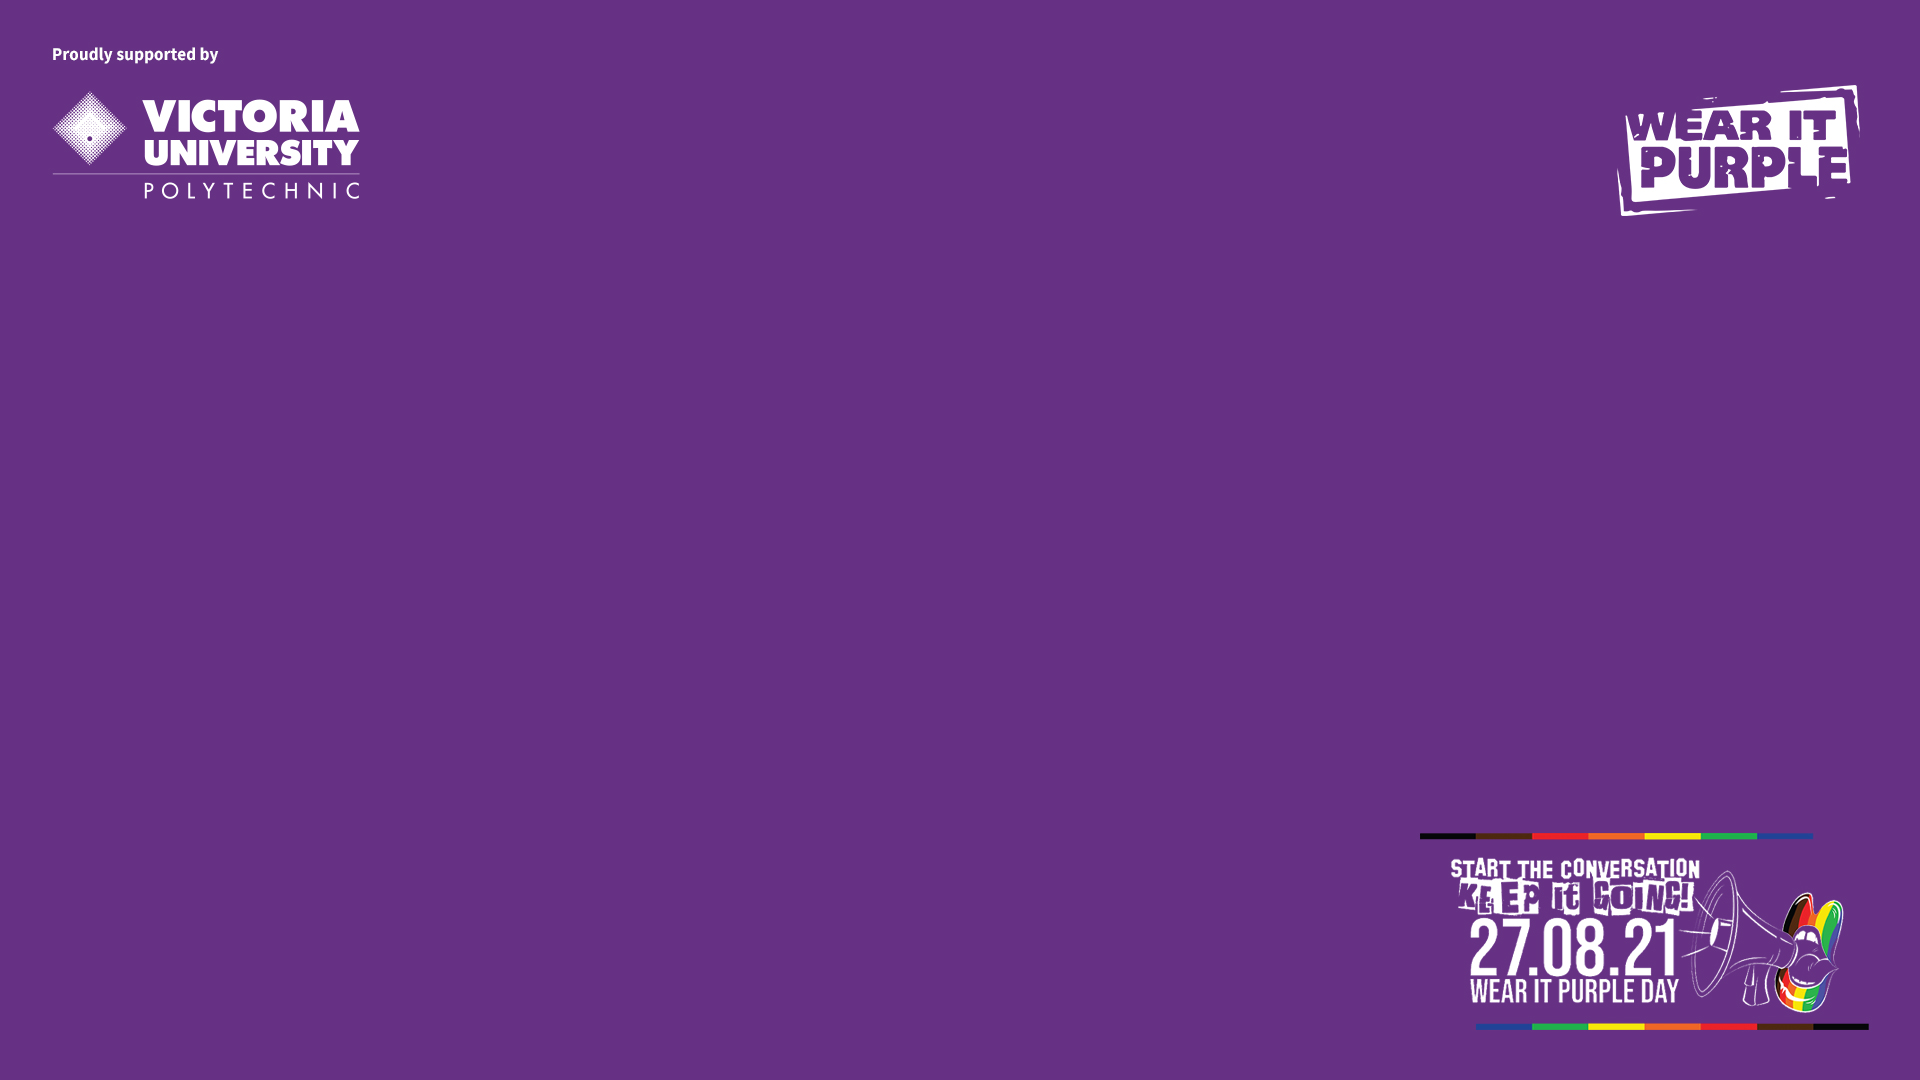 Tài nguyên Wear it Purple: Muốn tìm hiểu thêm về cộng đồng LGBTIQ+ và ngày Wear it Purple? Hãy đến với tài nguyên Wear it Purple đầy đủ và chính xác. Các thông tin và tài liệu ở đây sẽ giúp bạn hiểu rõ hơn về vấn đề và đóng góp tích cực trong việc truyền tải thông điệp đến cộng đồng.